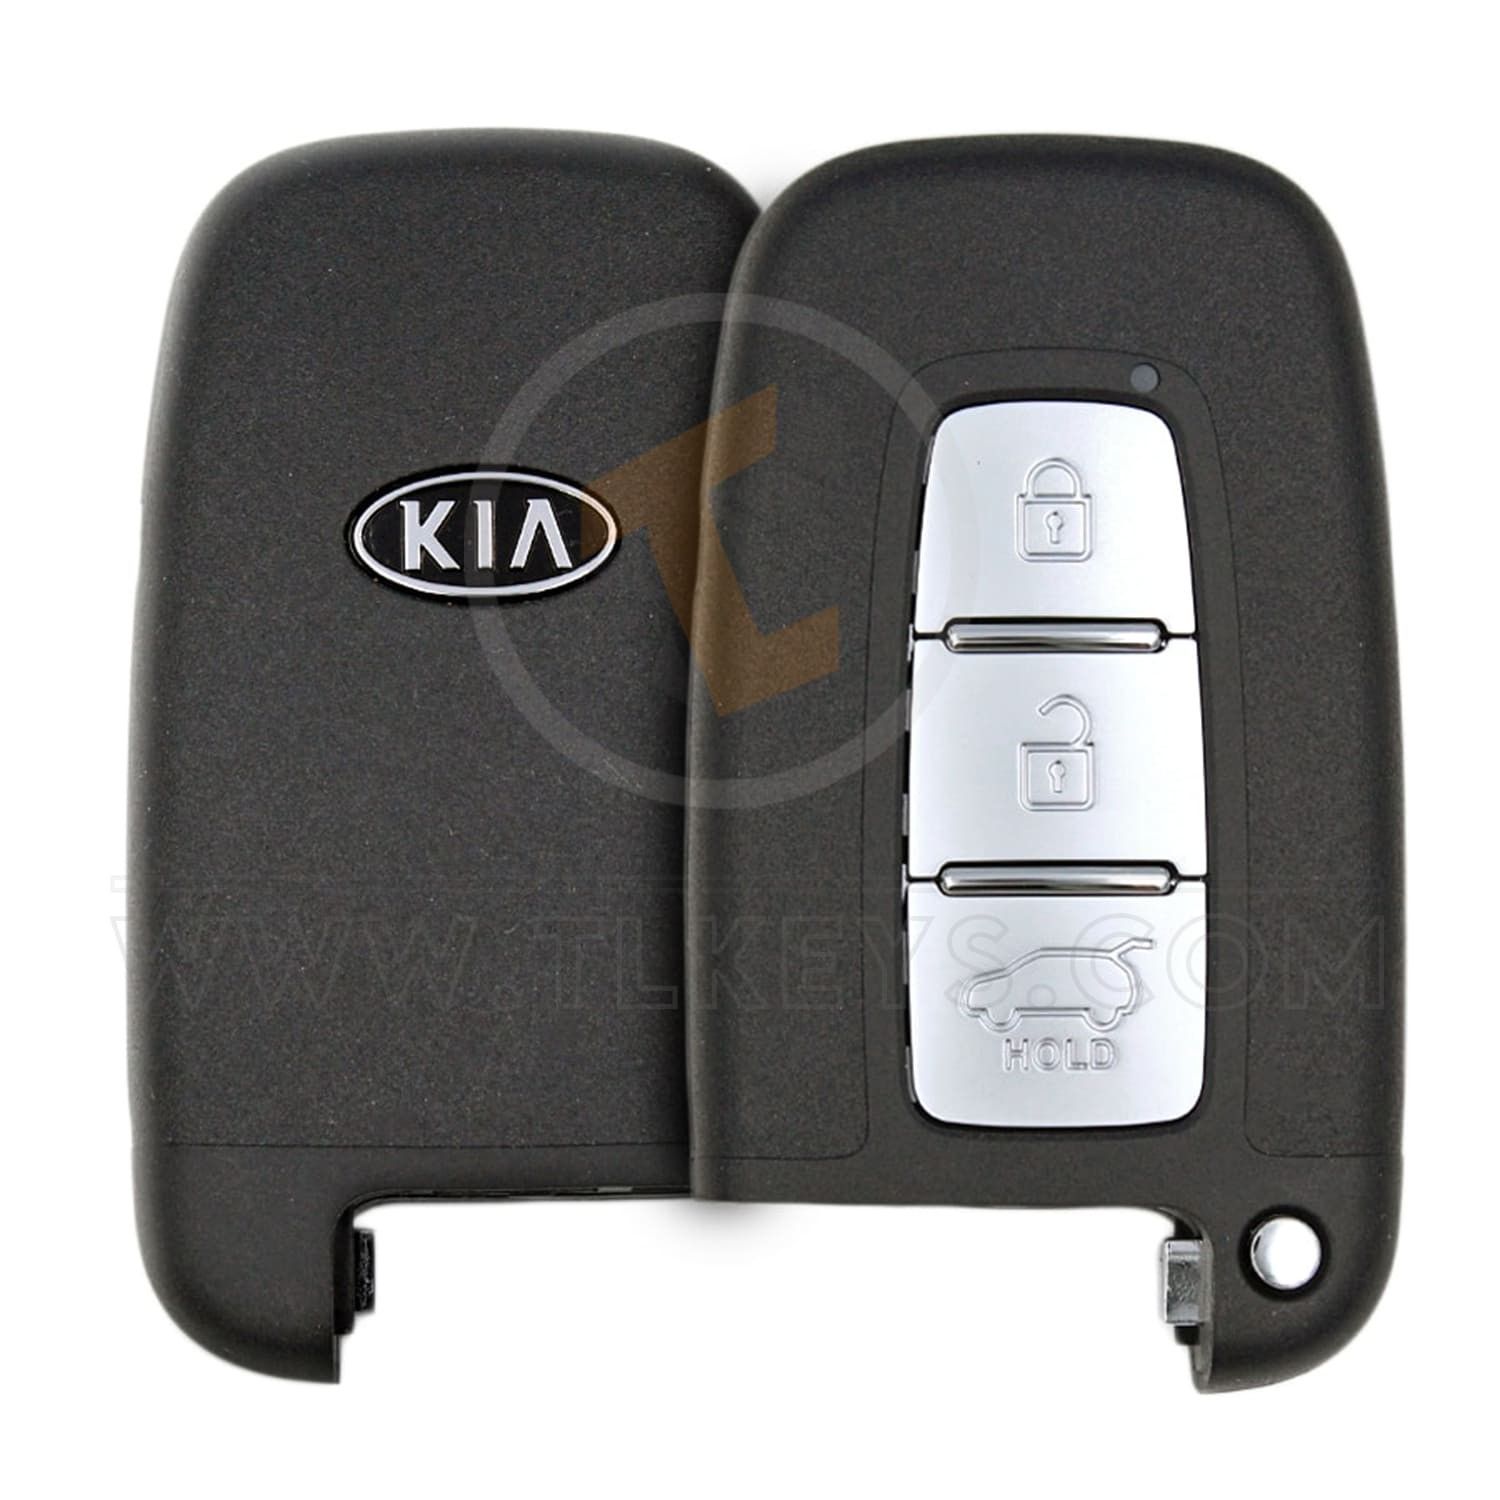 Genuine Kia Sportage Smart Proximity P/N: 95440-3W200 433MHz Frequency 433MHz